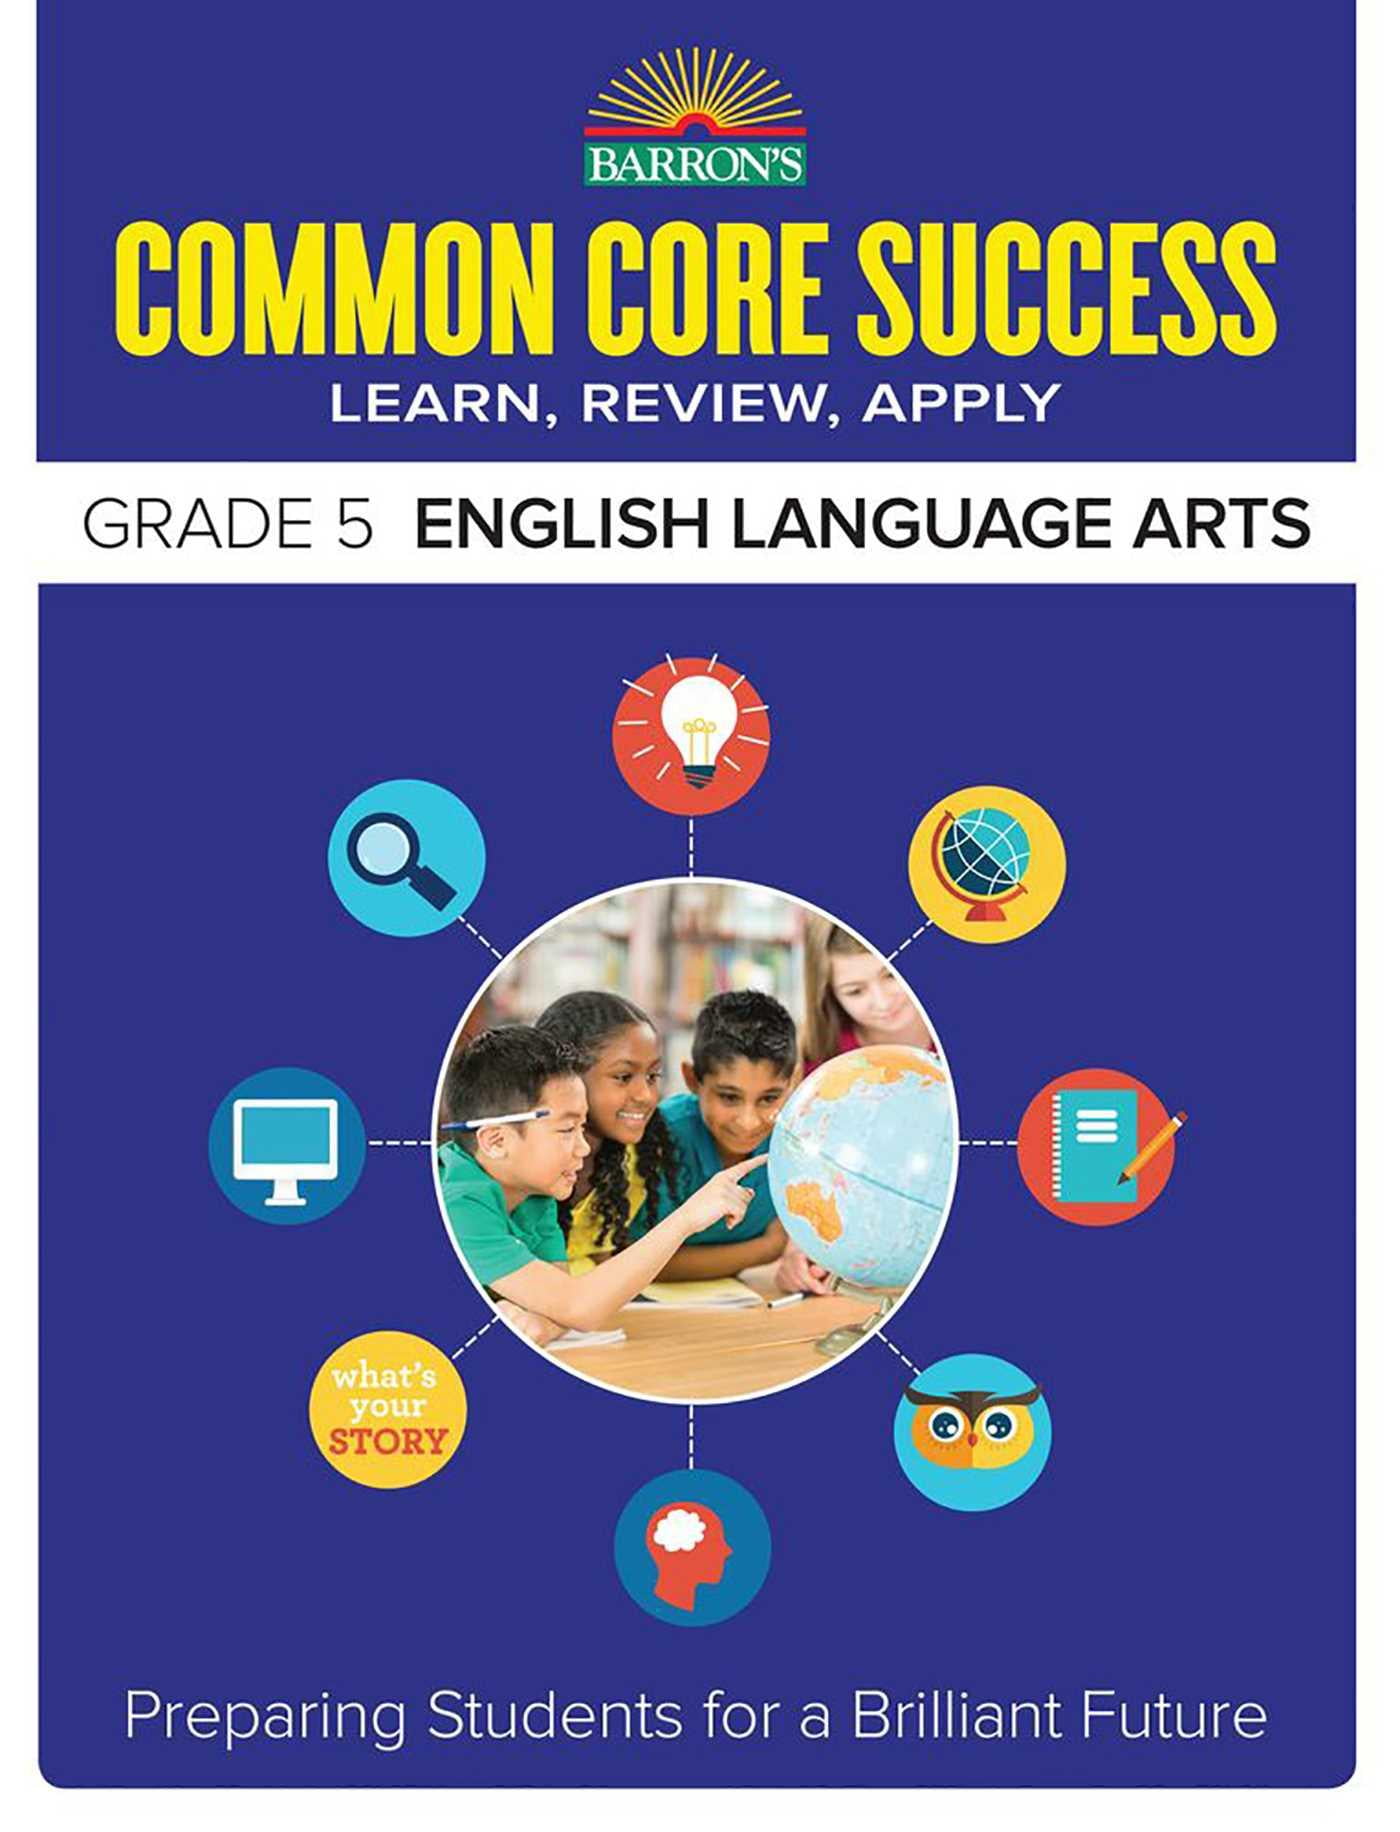 barron-s-common-core-success-grade-5-english-language-arts-preparing-students-for-a-brilliant